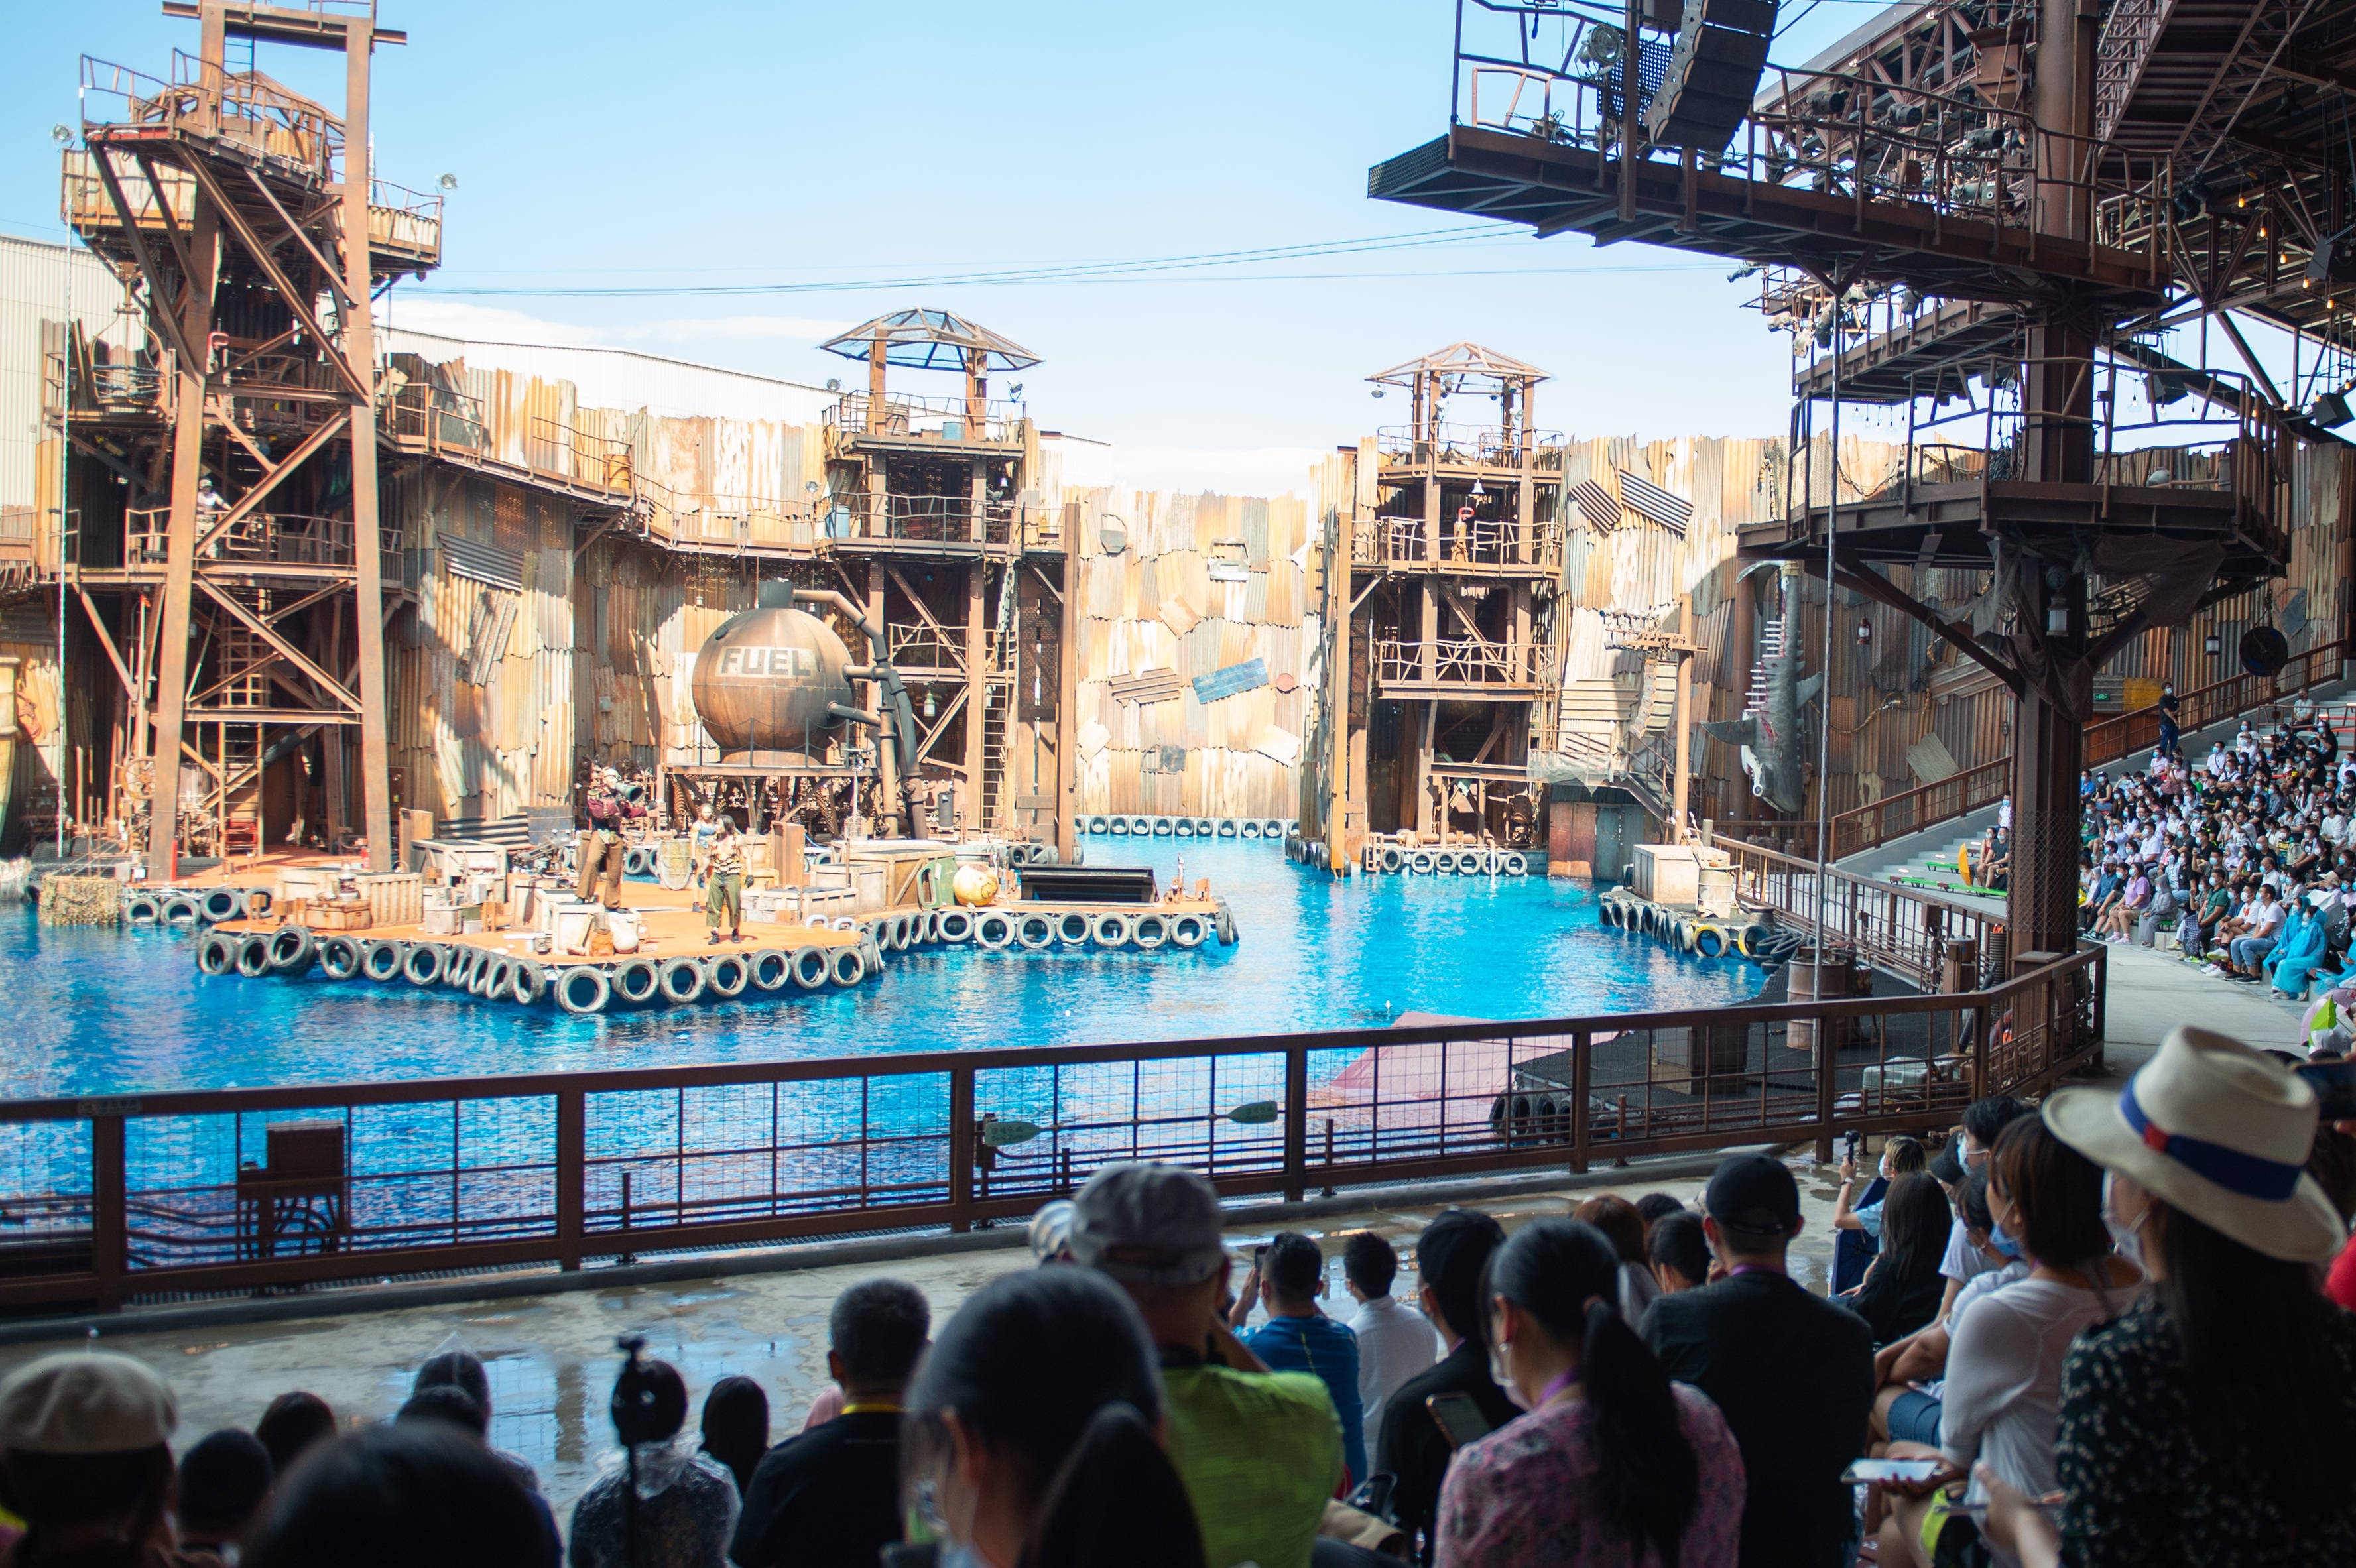 8月26日,游客在观看北京环球影城未来水世界主题景区特技表演.